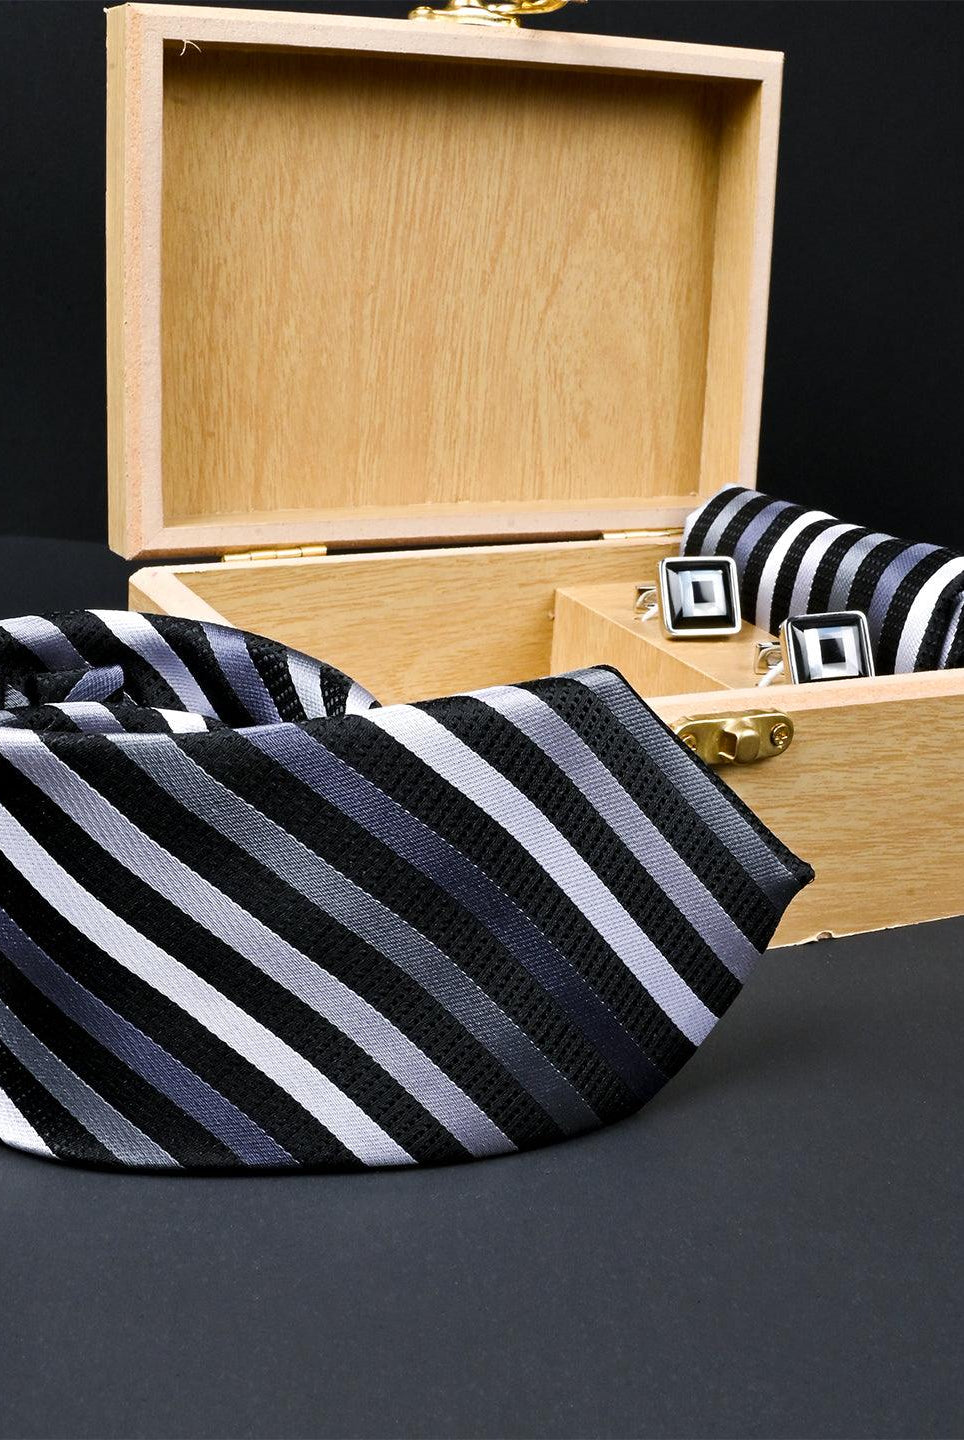 Black Striped Micro Silk Necktie With Pocket Square & Cufflinks - Tistabene